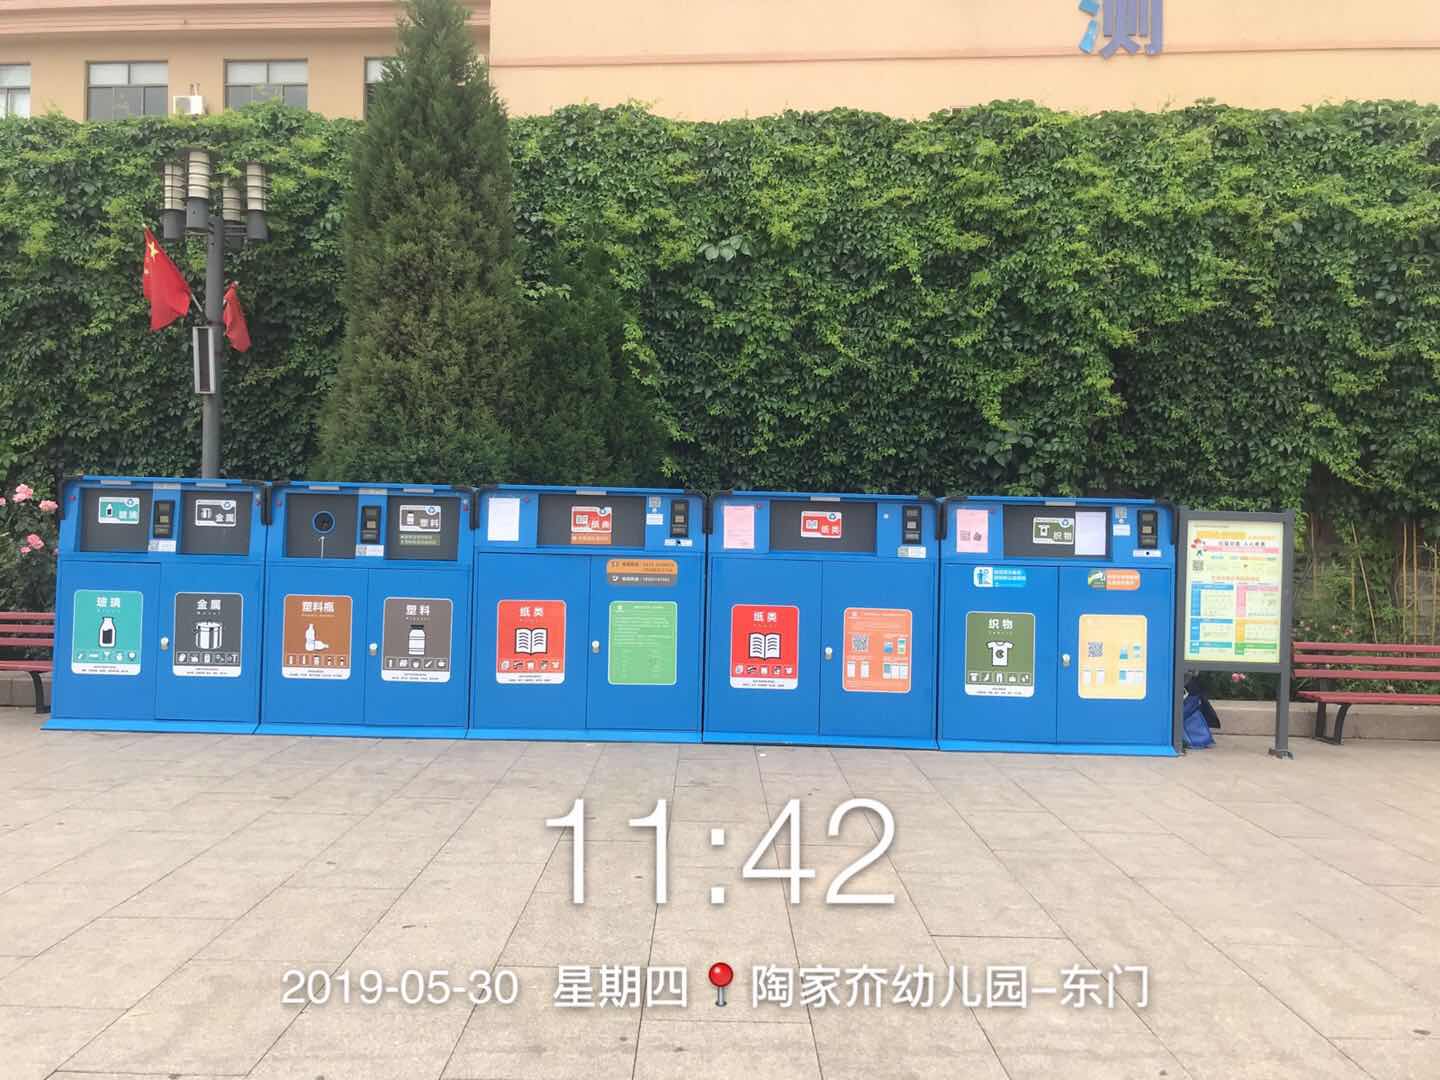 智能垃圾桶,南京智能垃圾桶,智能垃圾桶功能,南京智能垃圾桶功能